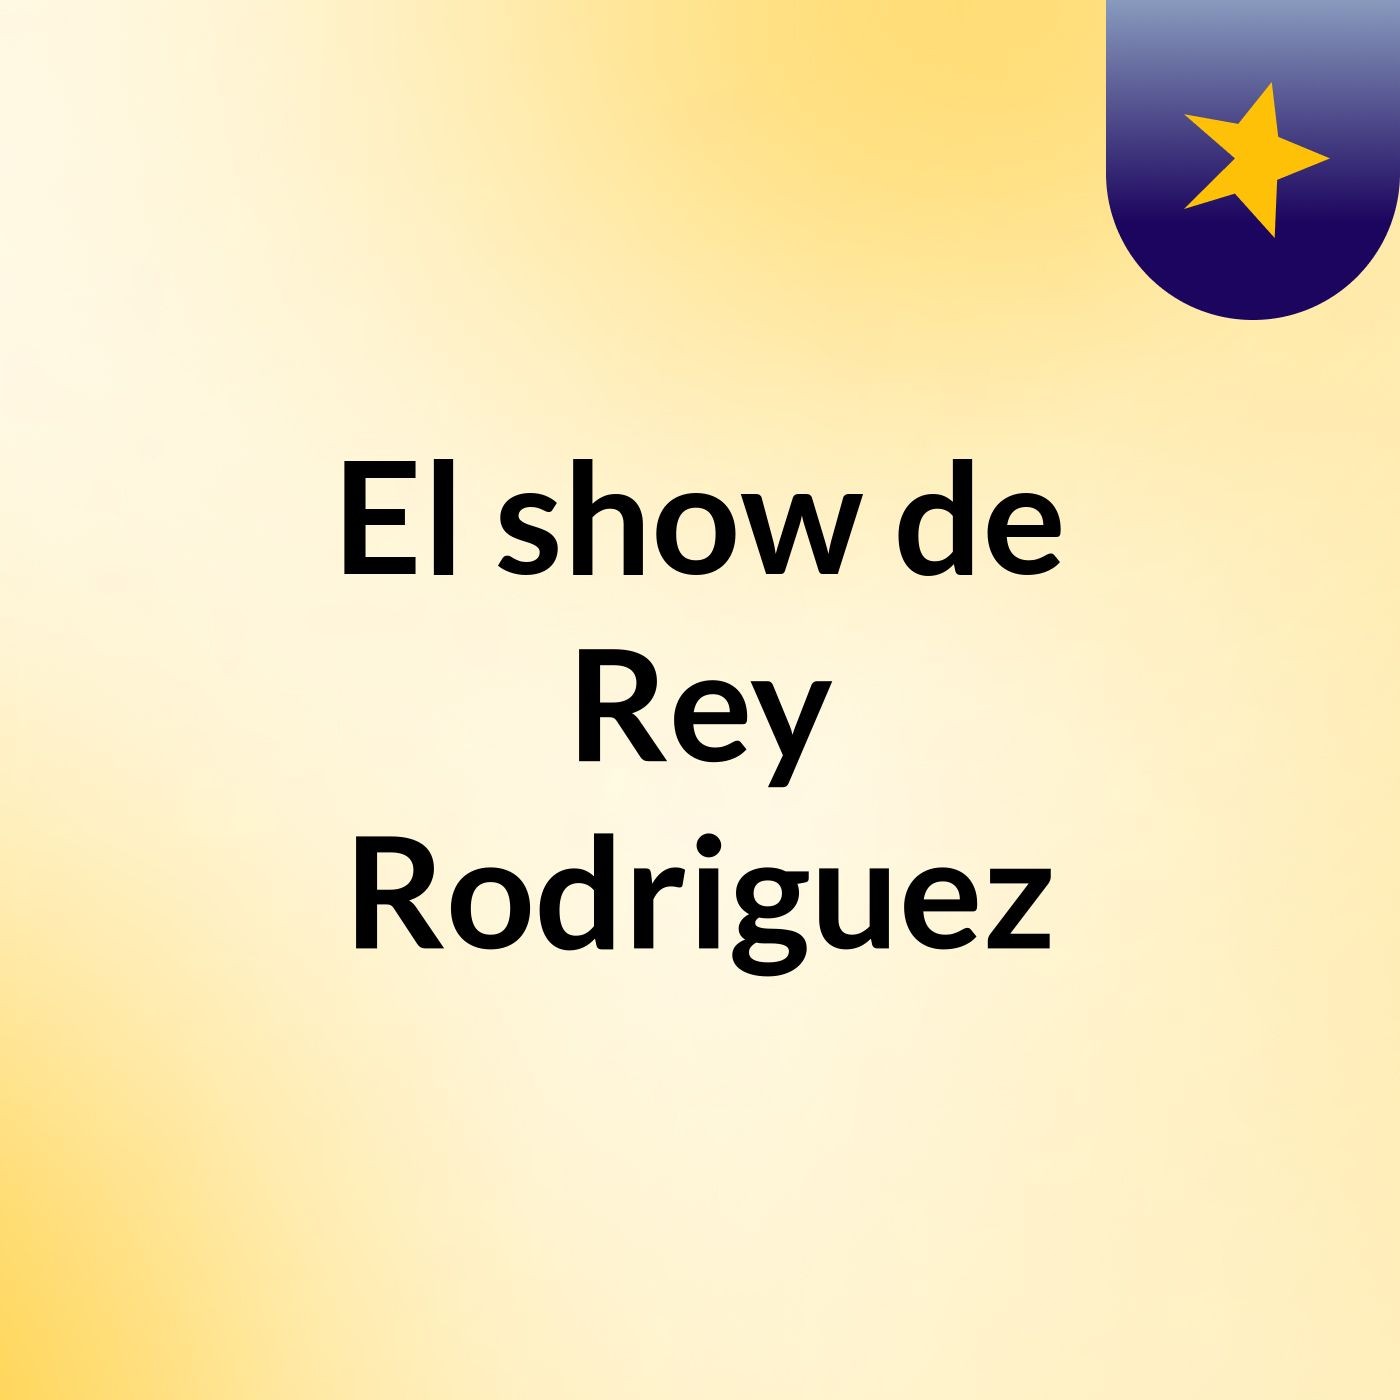 Episodio 3 - El show de Rey Rodriguez